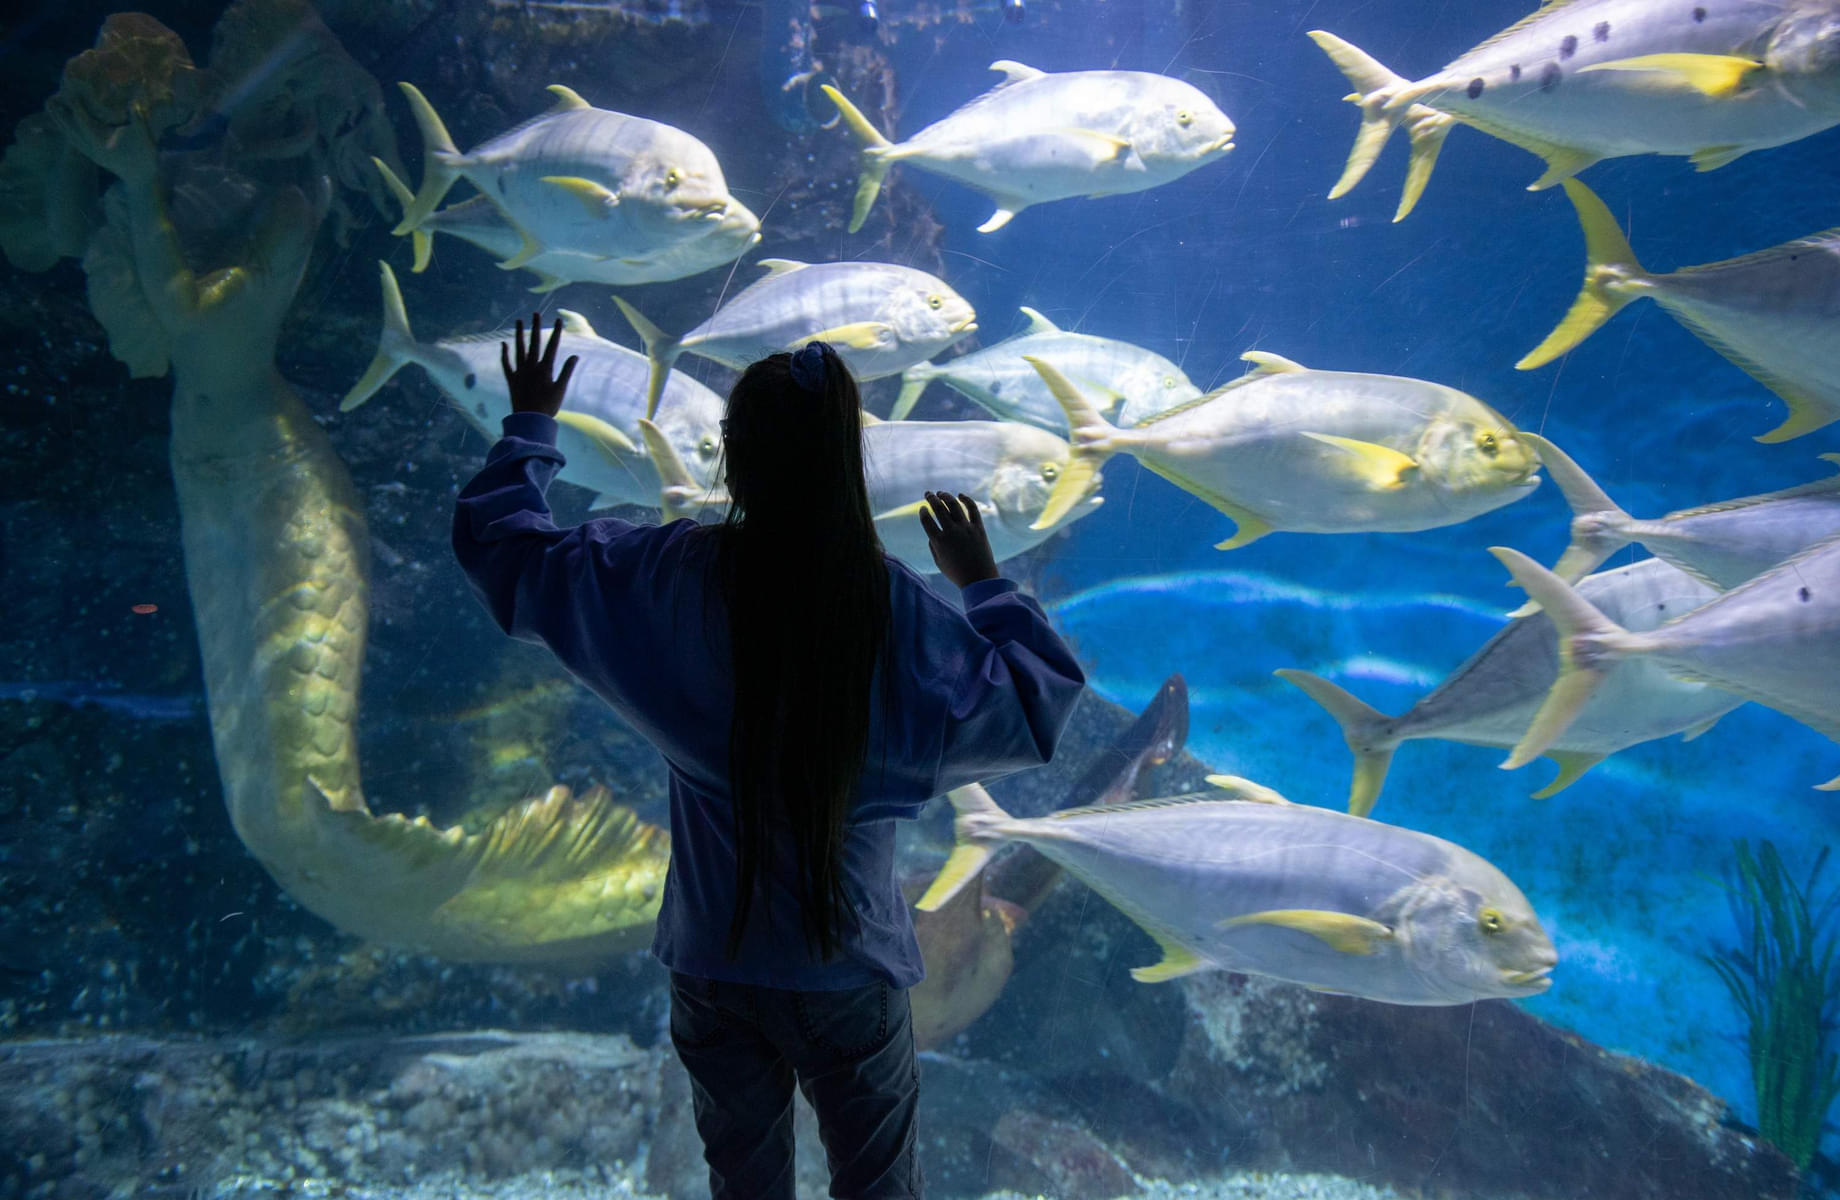 Capture stunning moments at Melbourne SEA Life Aquarium